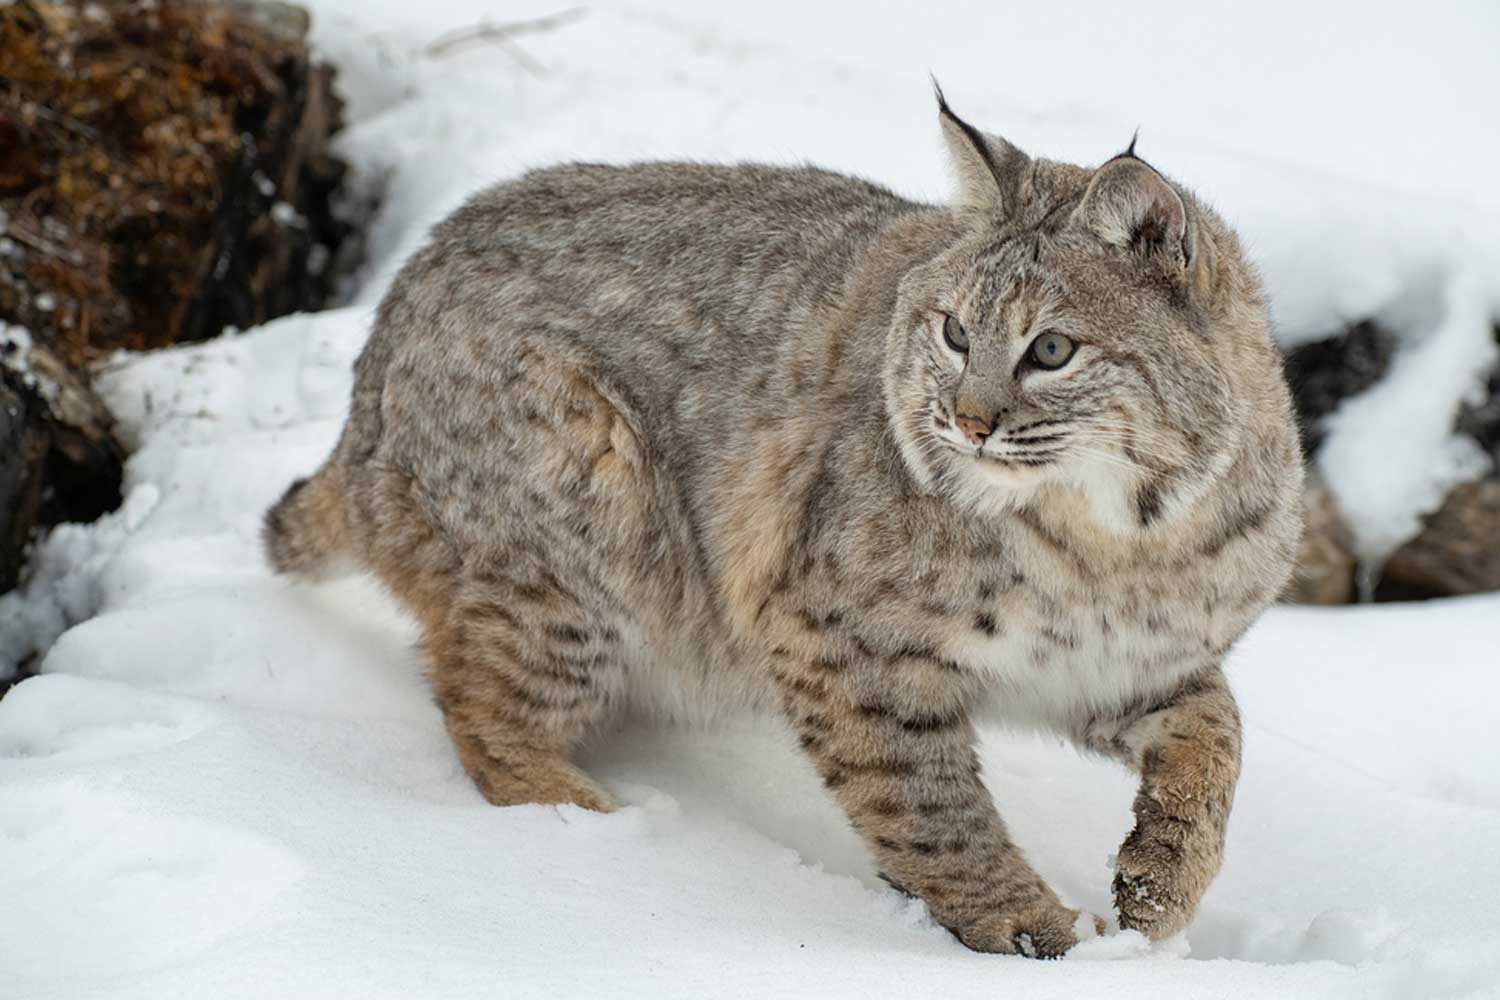 Bobcat standing in snow.